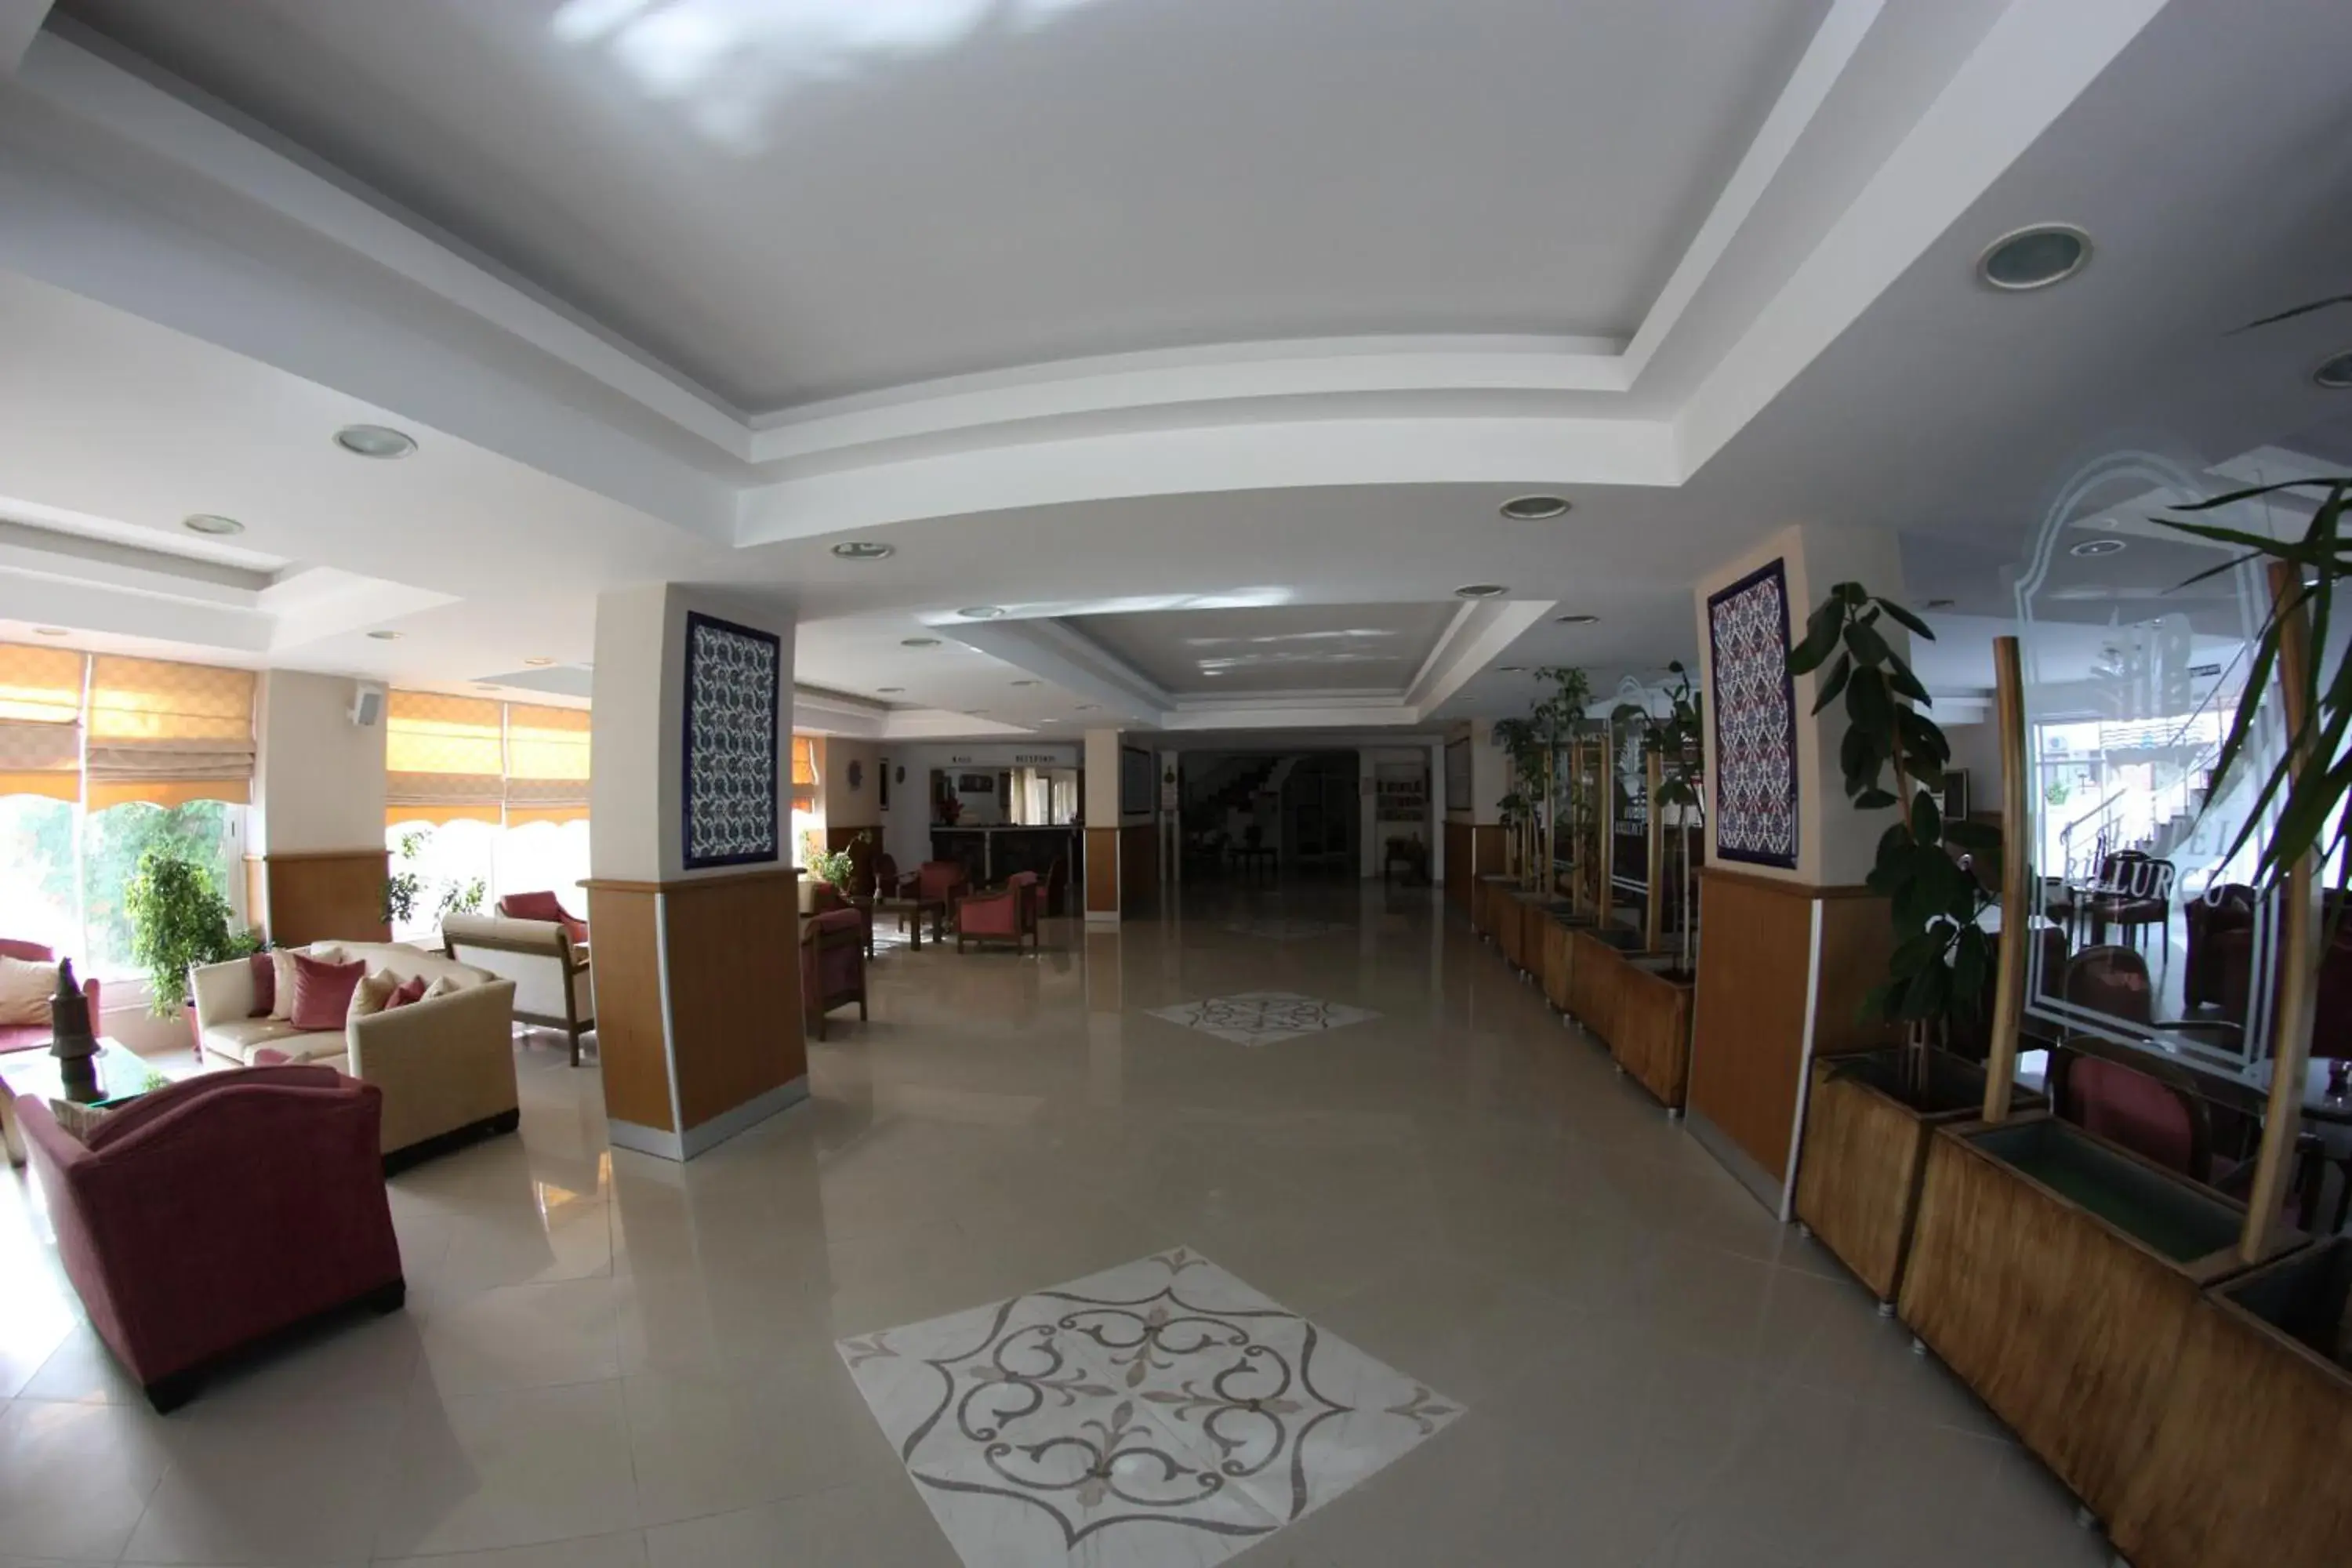 Lobby or reception, Lobby/Reception in Hotel Billurcu